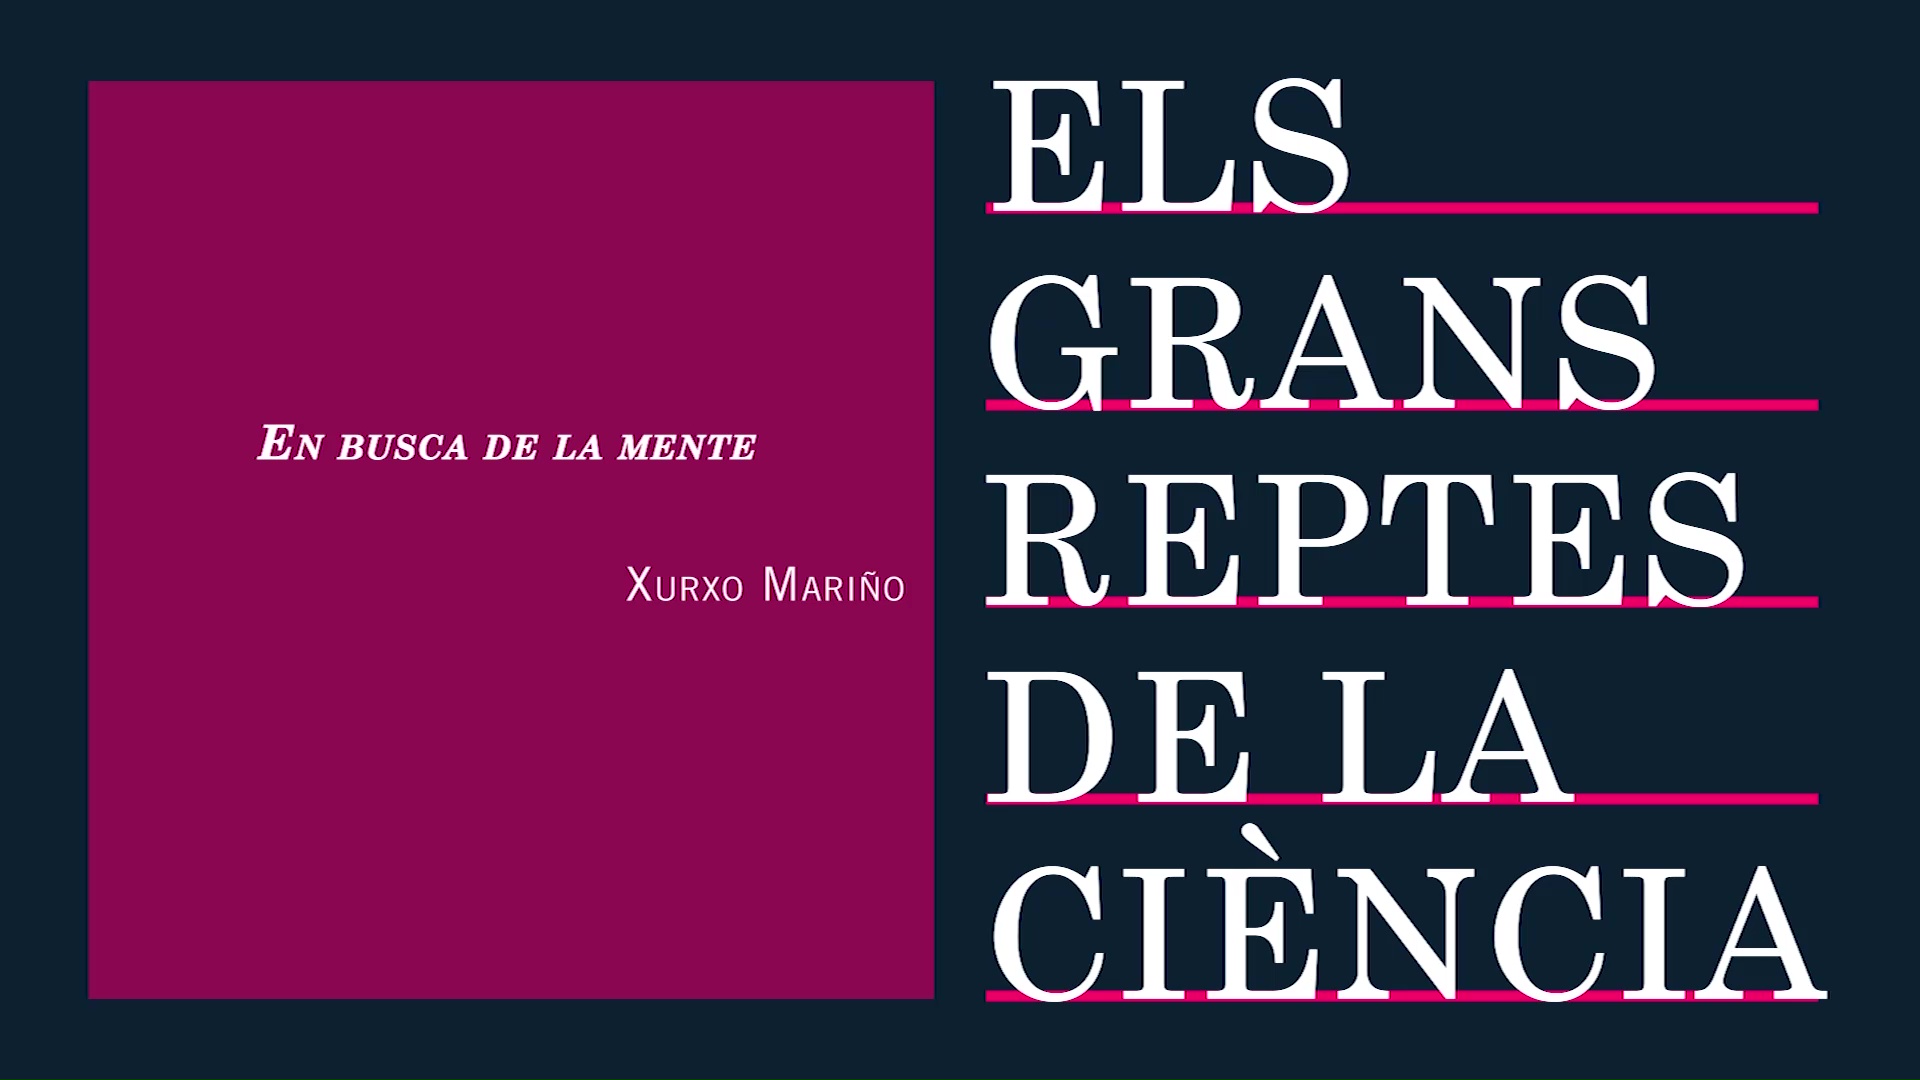 Image of the cover of the video;Conferència de Xurxo Mariño 'En busca de la mente'.